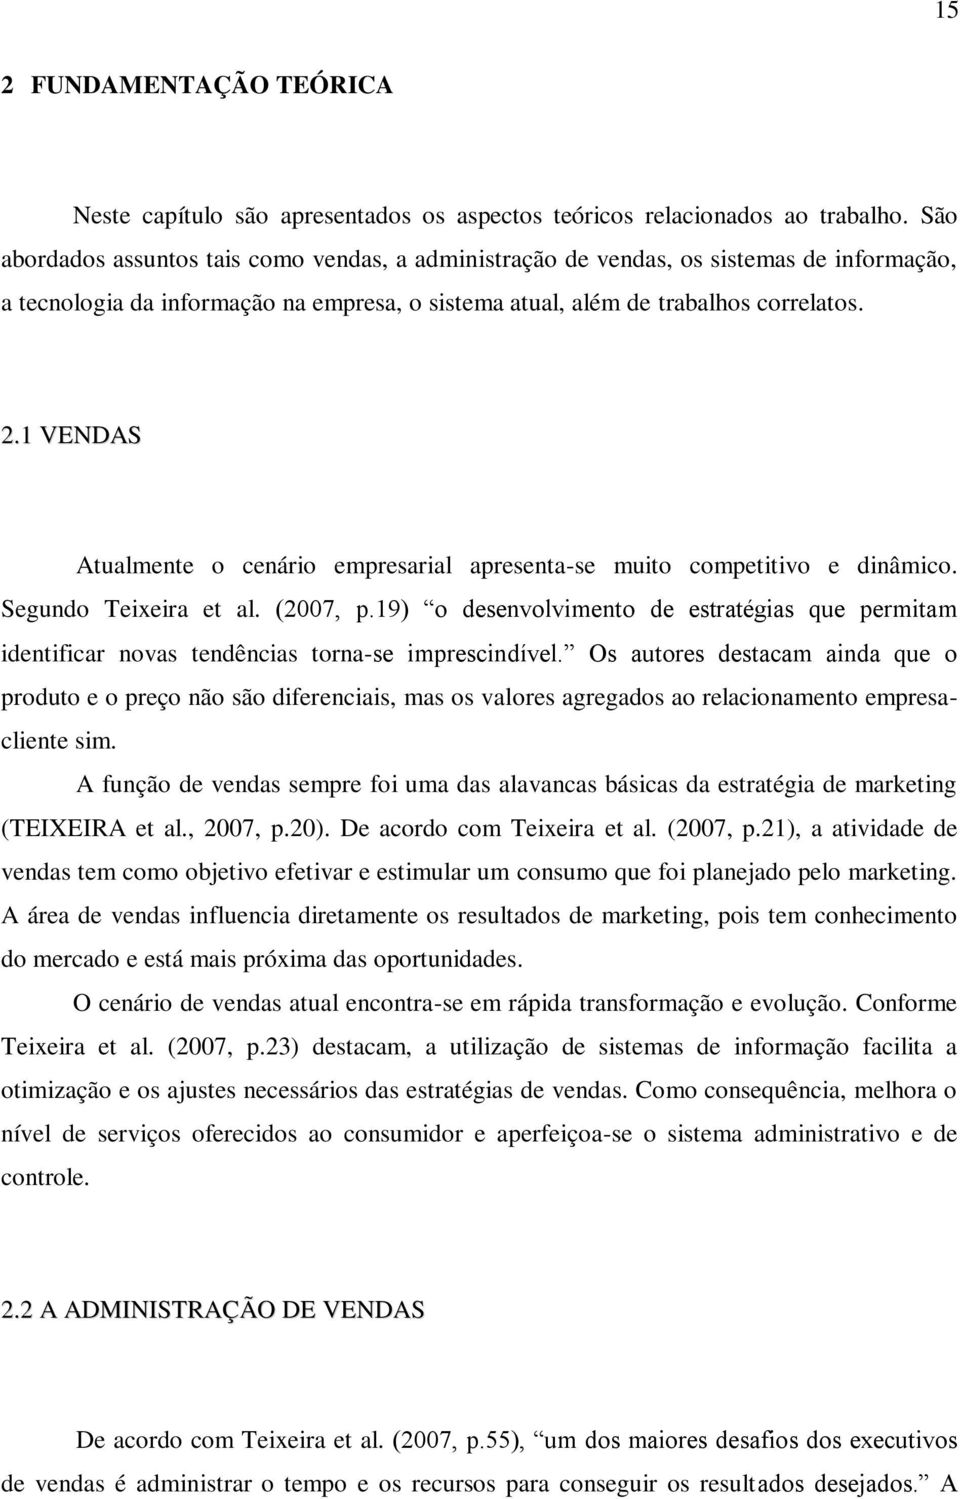 1 VENDAS Atualmente o cenário empresarial apresenta-se muito competitivo e dinâmico. Segundo Teixeira et al. (2007, p.